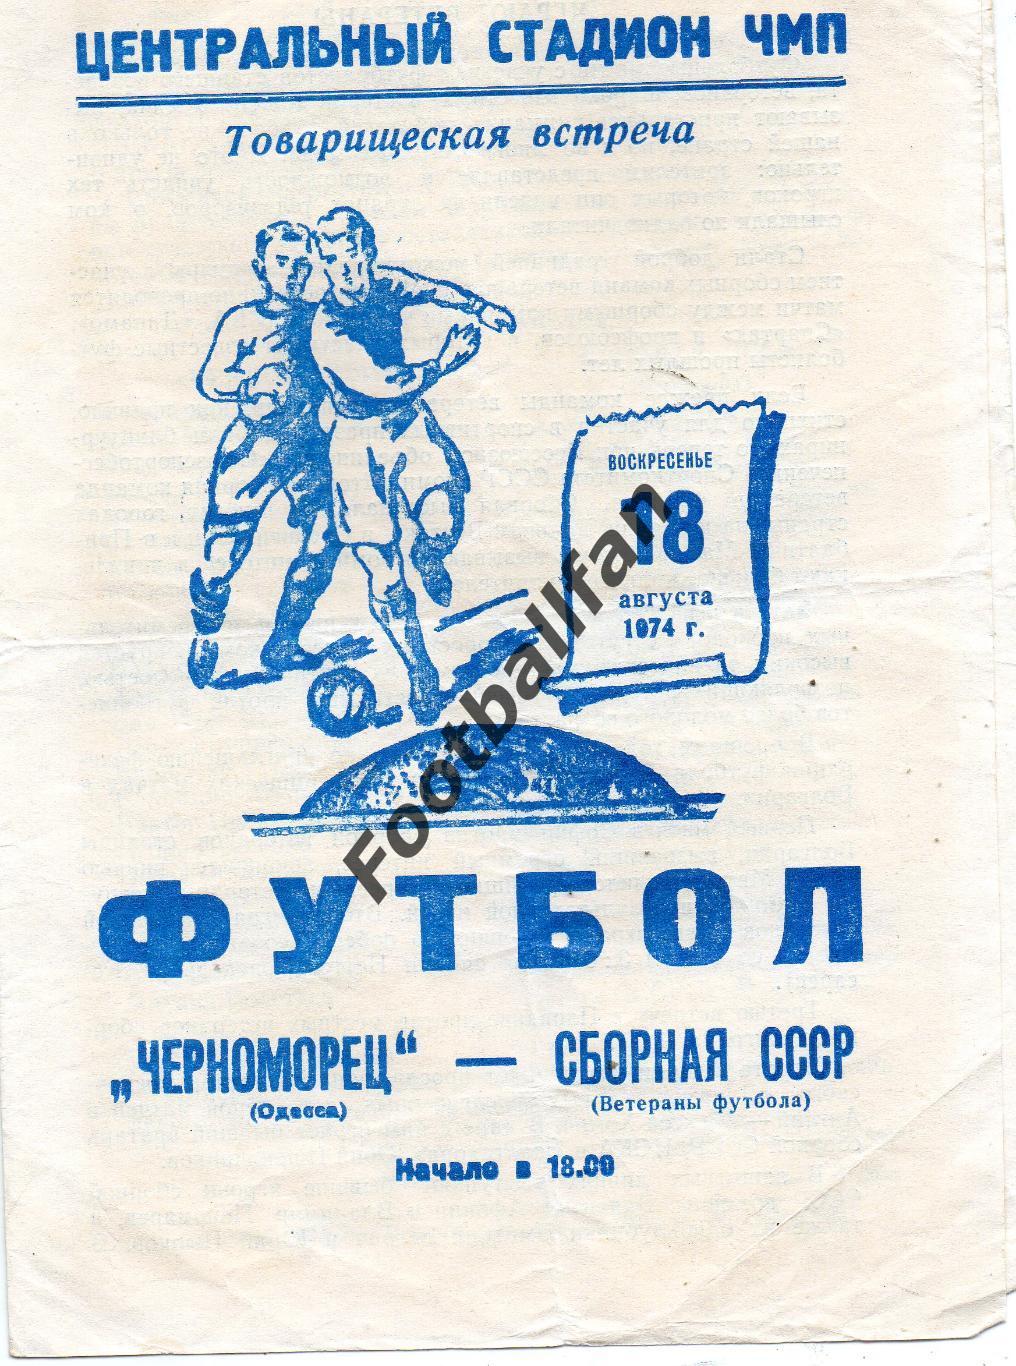 Черноморец Одесса - сборная СССР ( ветераны ) 18.08.1974